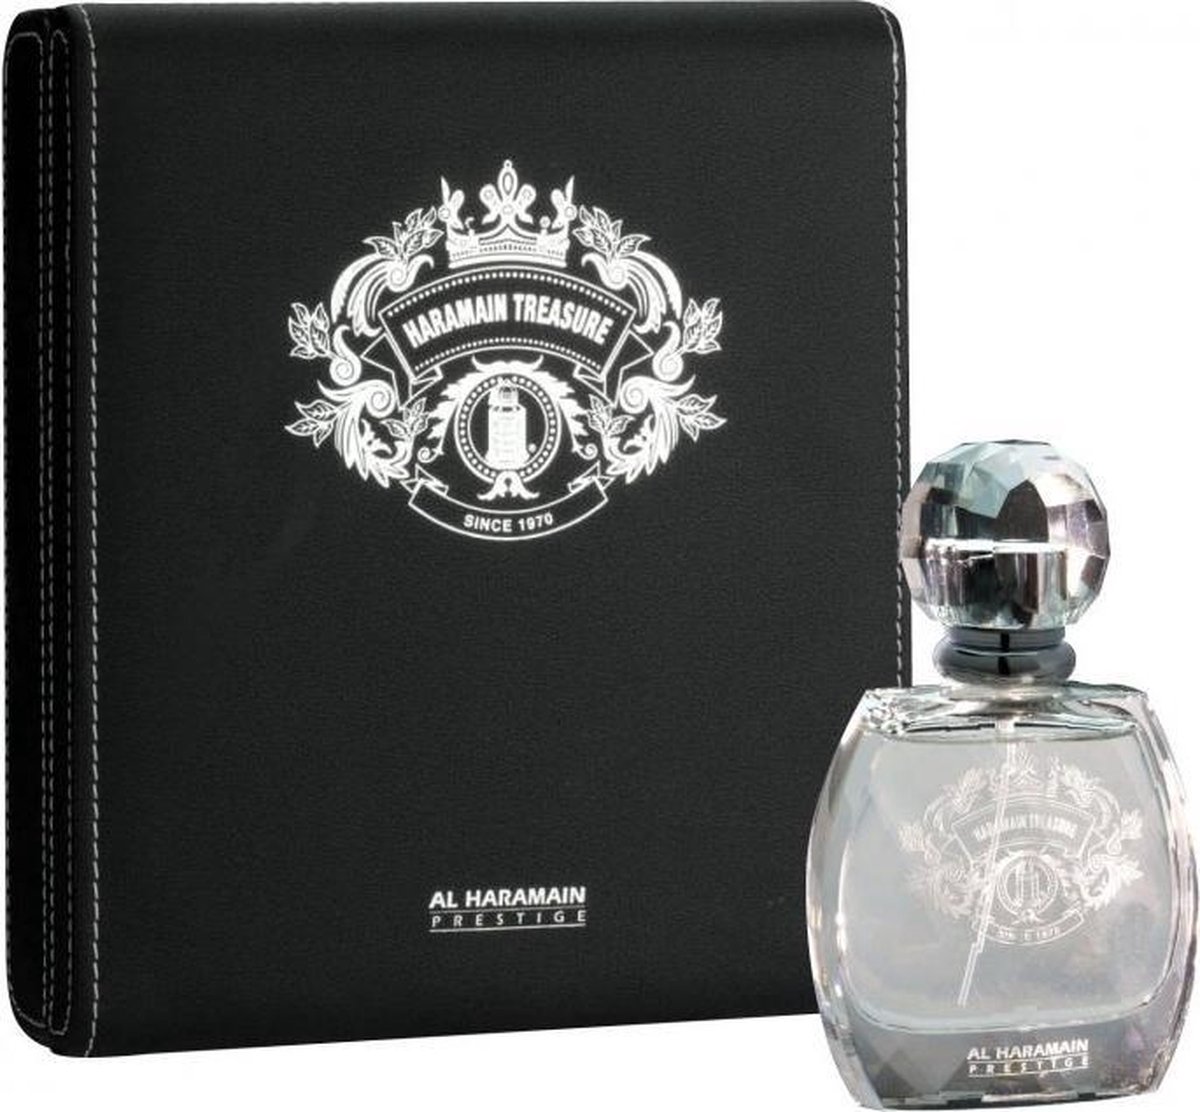 Al Haramain Haramain Treasure Eau de Parfum Spray 70 ml